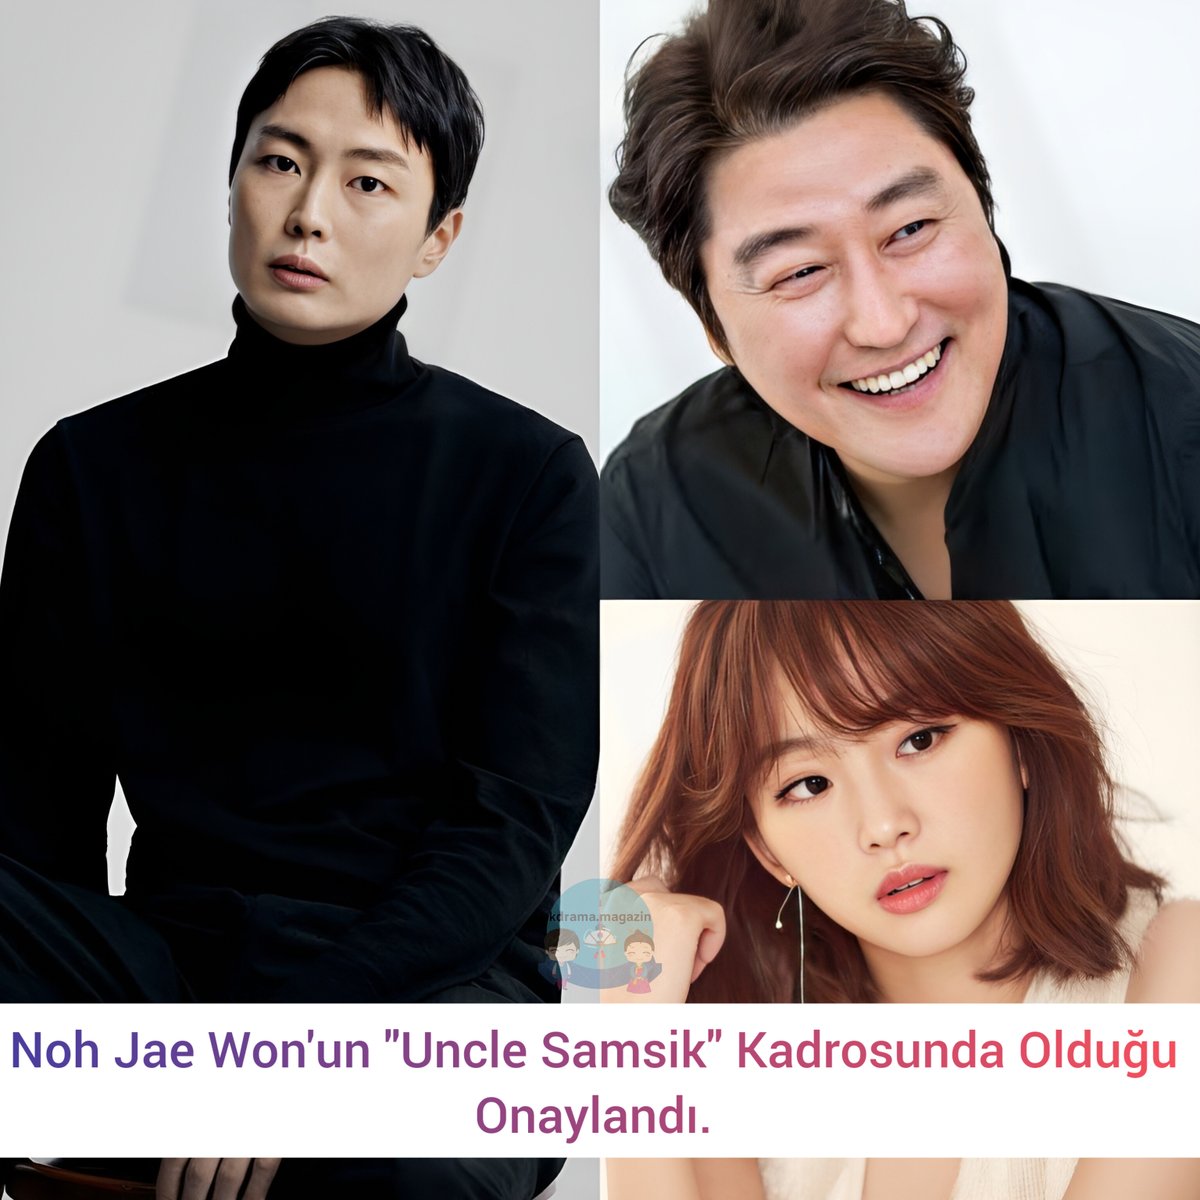 #NohJaeWon'un #UncleSamsik Kadrosunda Olduğu Onaylandı. 

🎬Seodaemun grubuna liderlik eden Han-soo olarak oynayacak. 

#ByunYoHan #JinKiJoo #SongKangHo